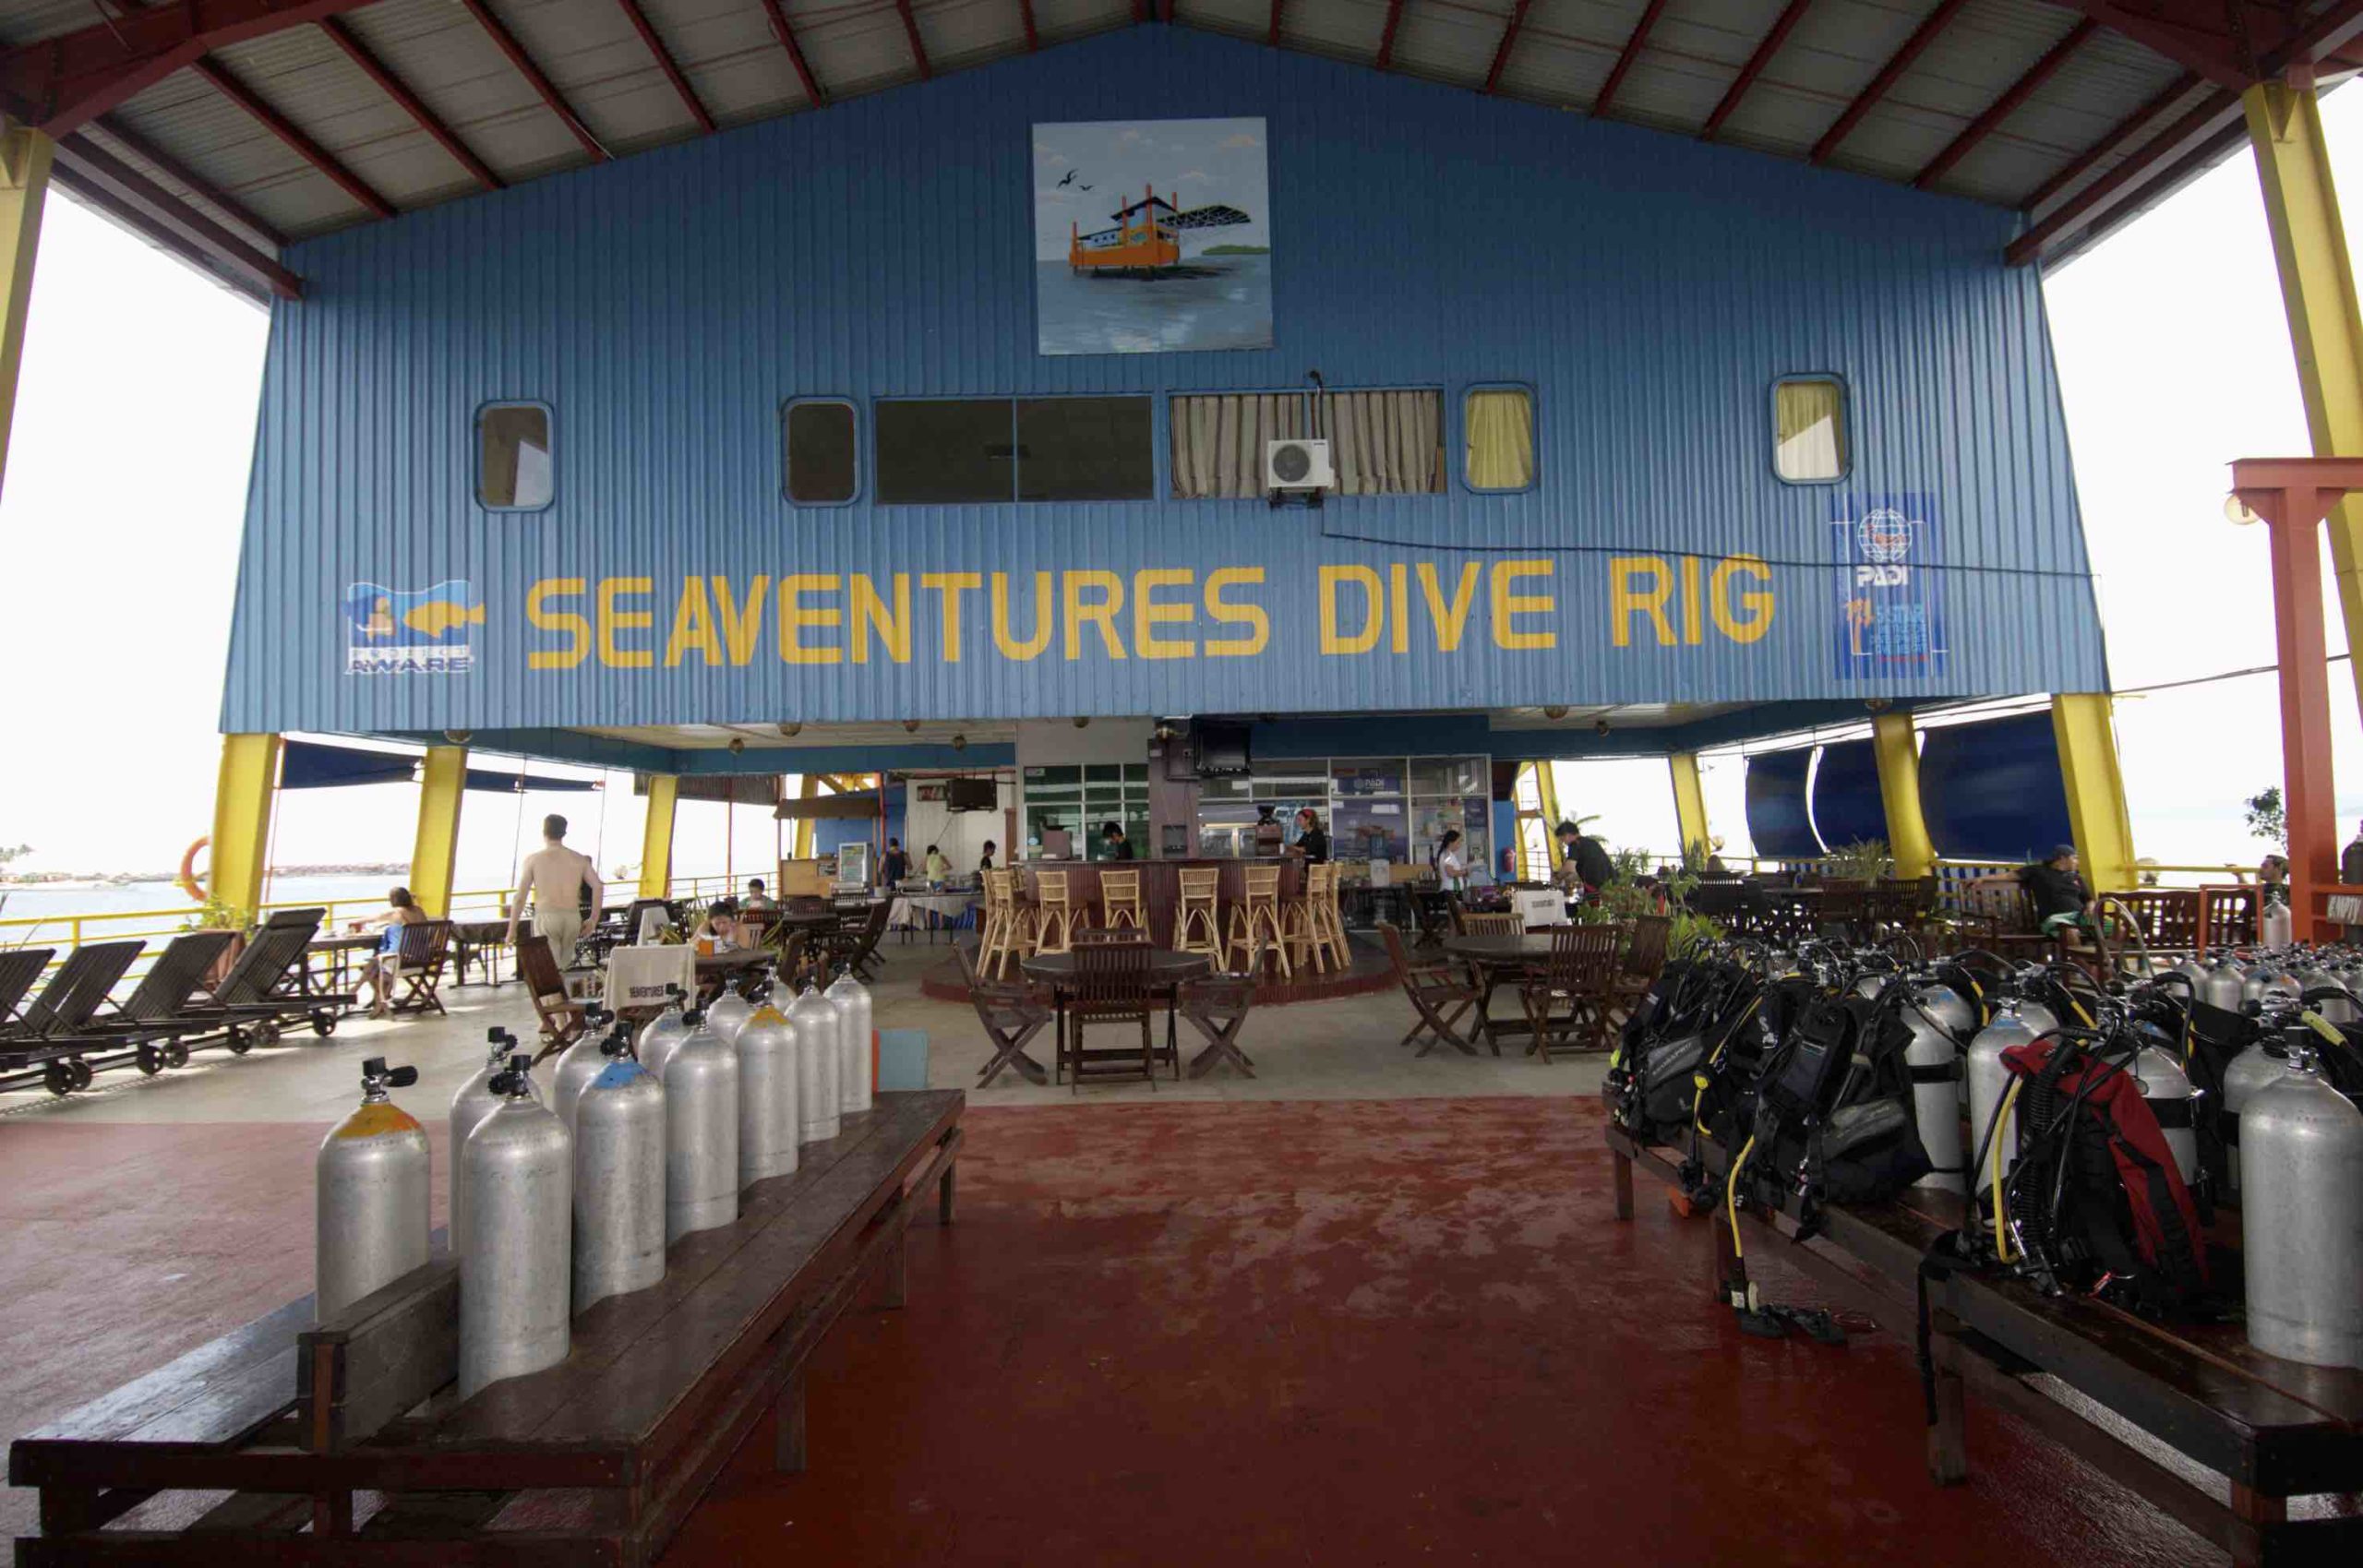 Seaventures dive rig dive centre